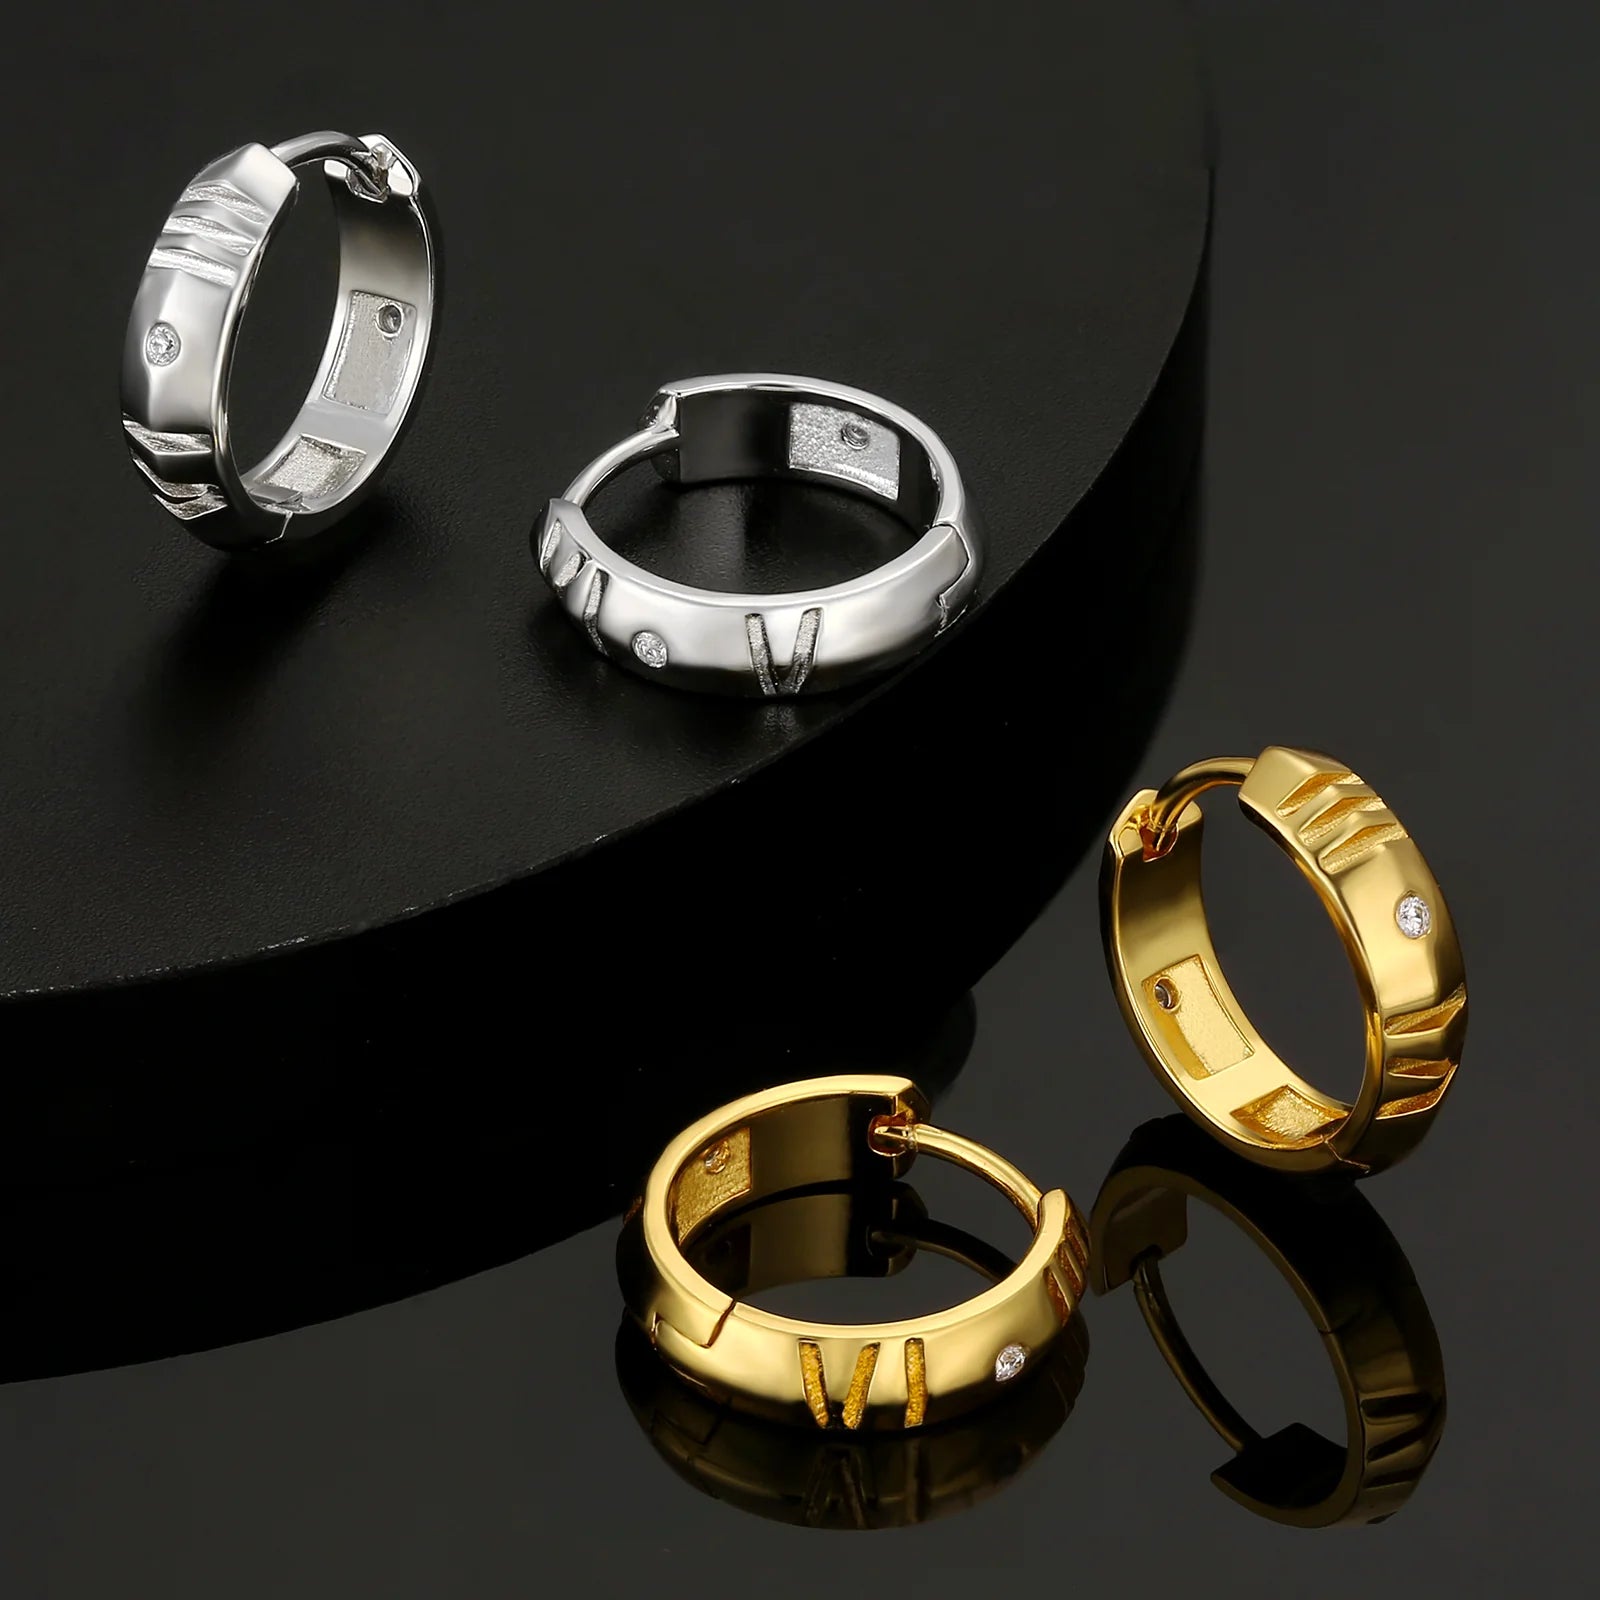 S925 Silver Roman Numerals Hoop Earrings for Men in 14K Gold - 15mm 